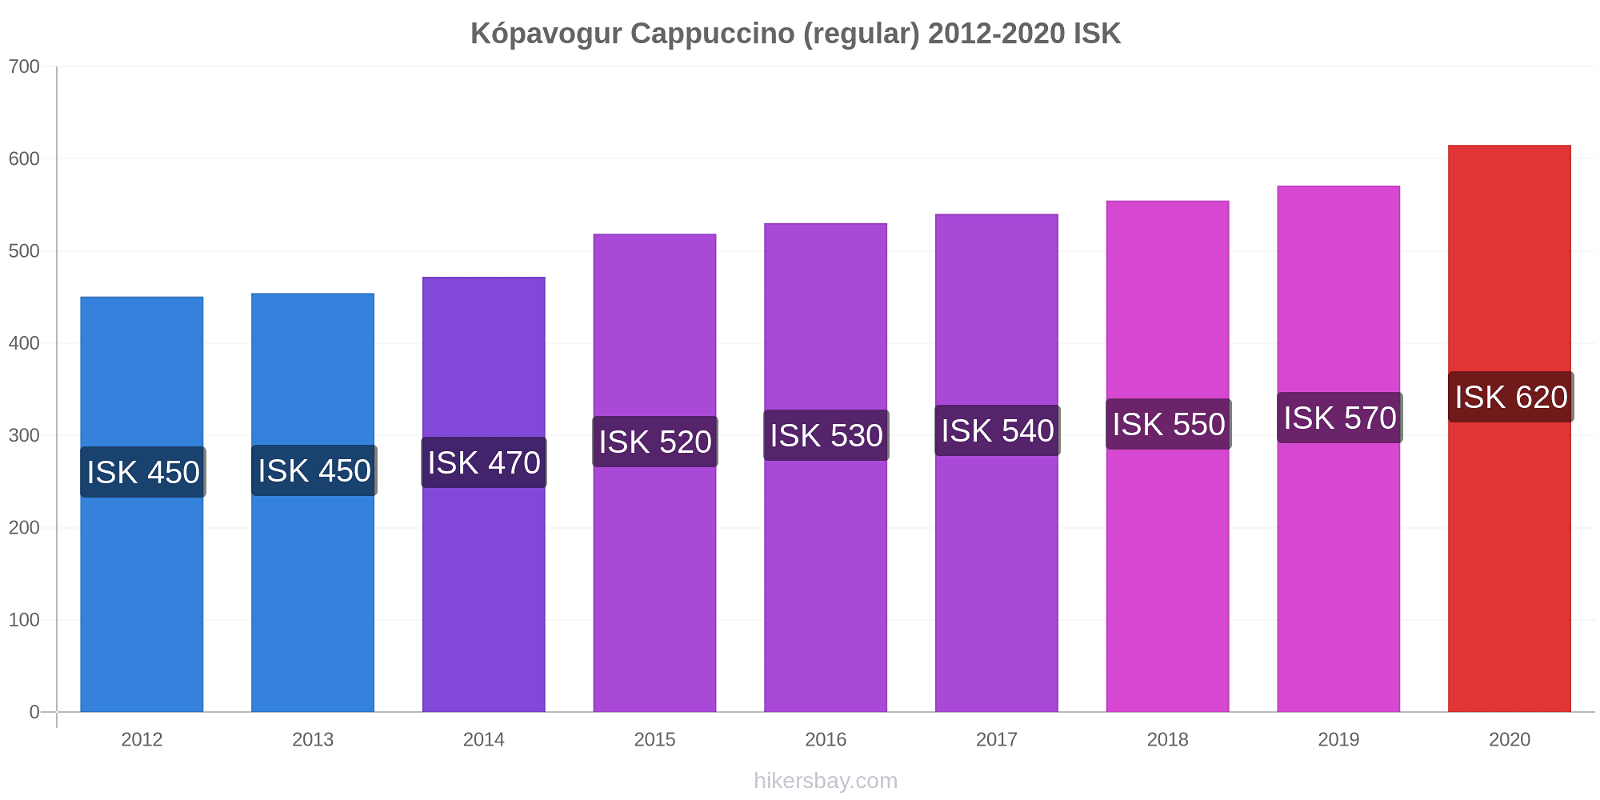 Kópavogur price changes Cappuccino (regular) hikersbay.com